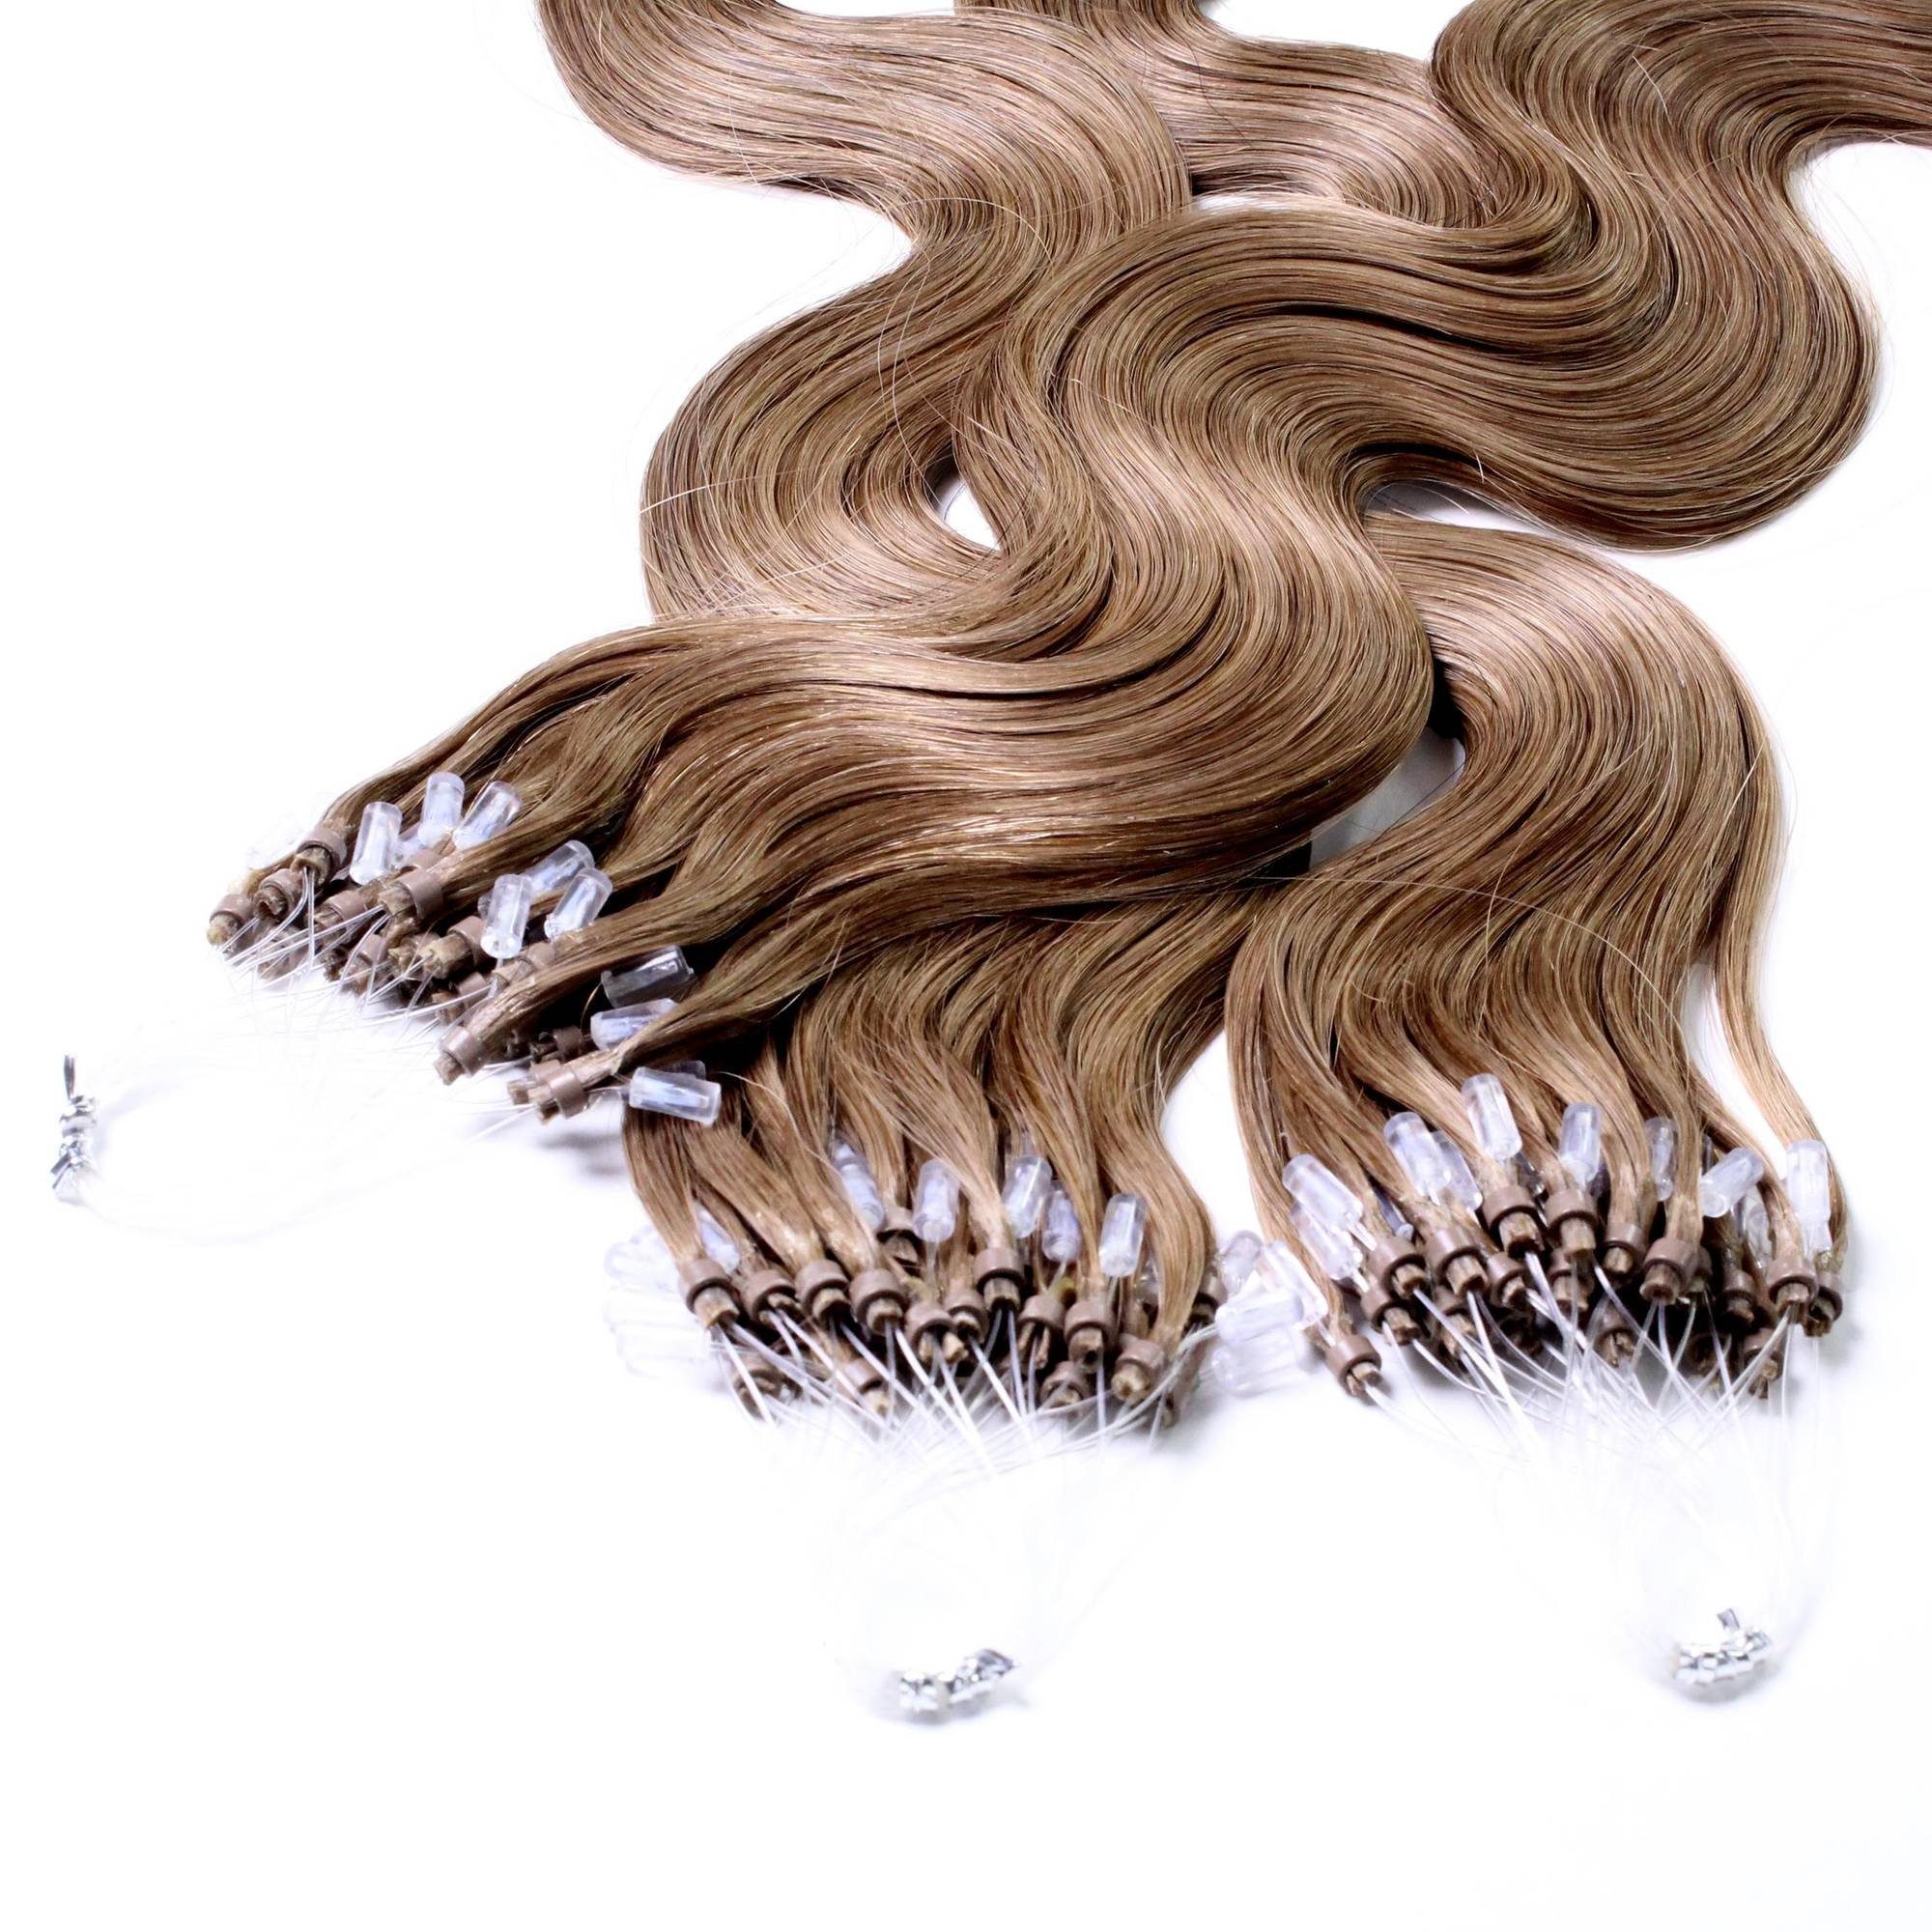 hair2heart Echthaar-Extension Microring Loops - gewellt #8/1 Hellblond Asch 0.5g 40cm